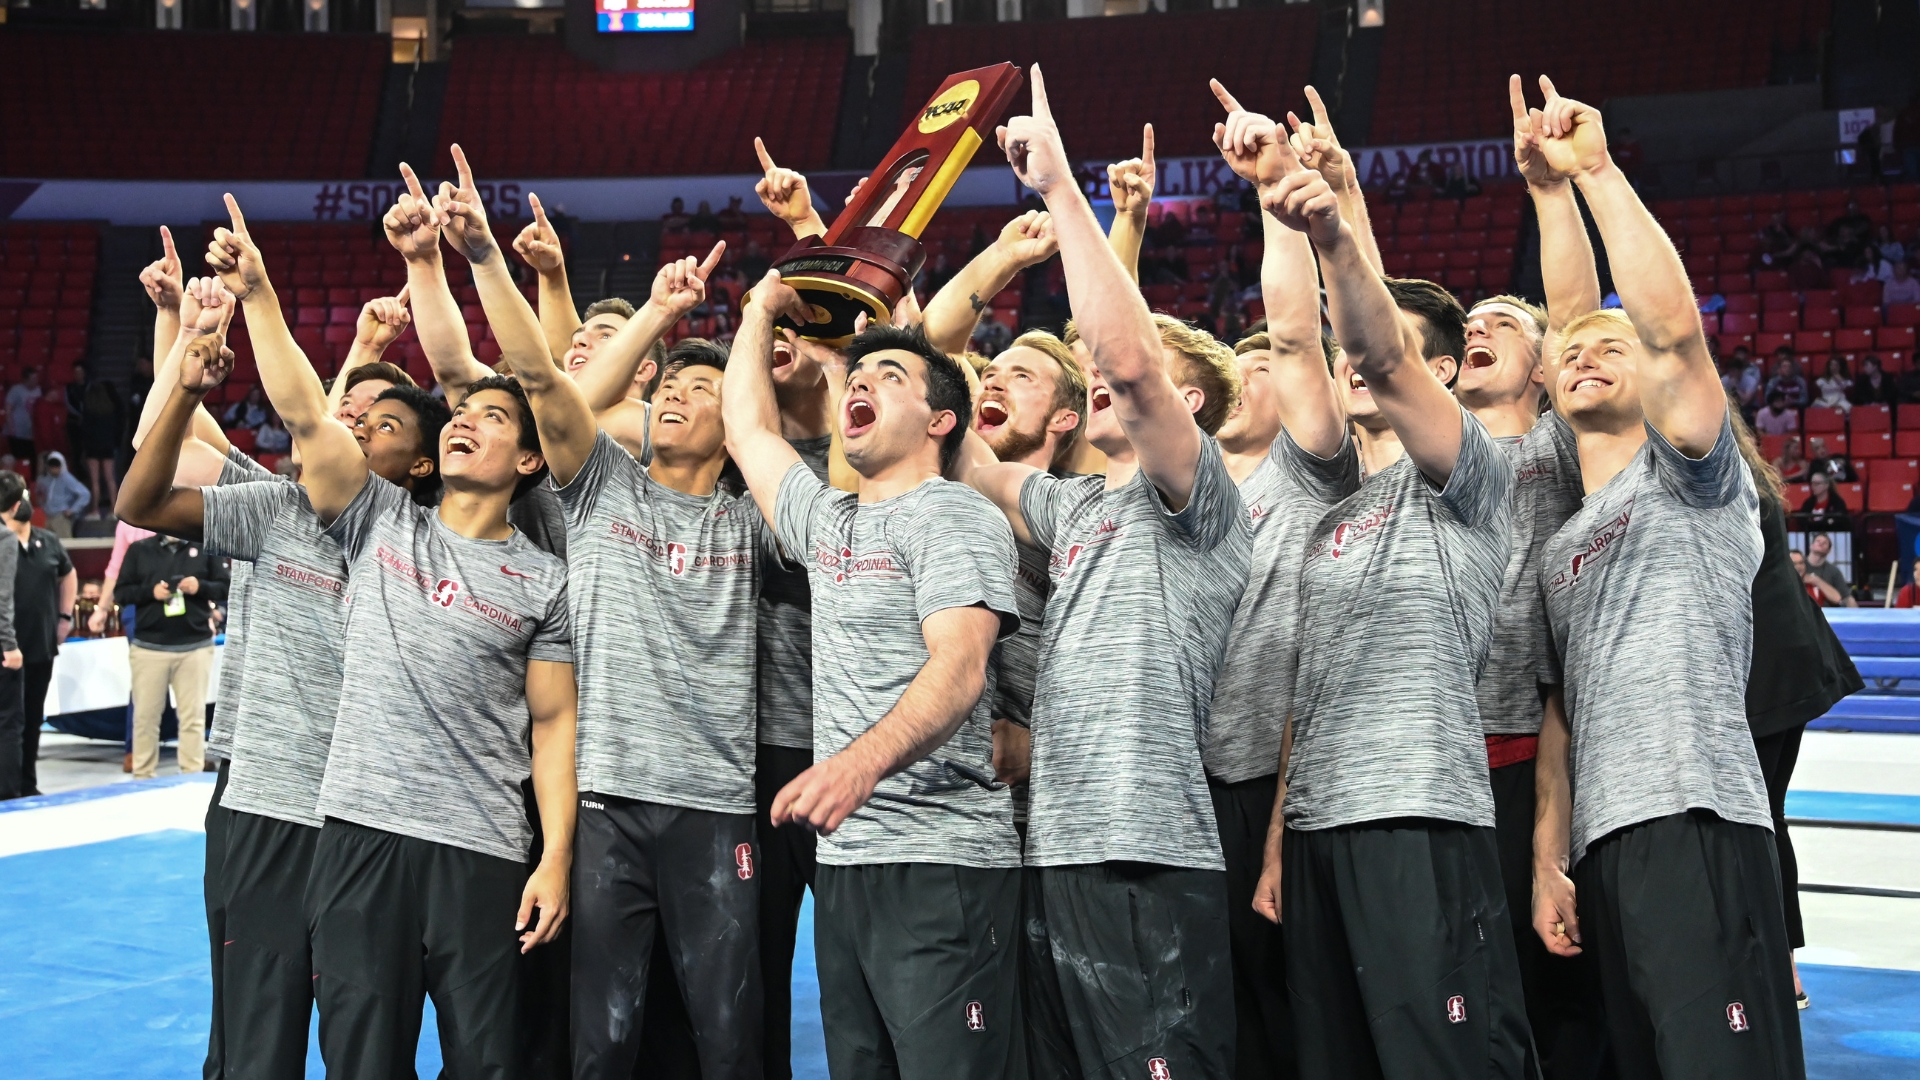 2022 Stanford men's gymnastics team holds national title trophy after winning